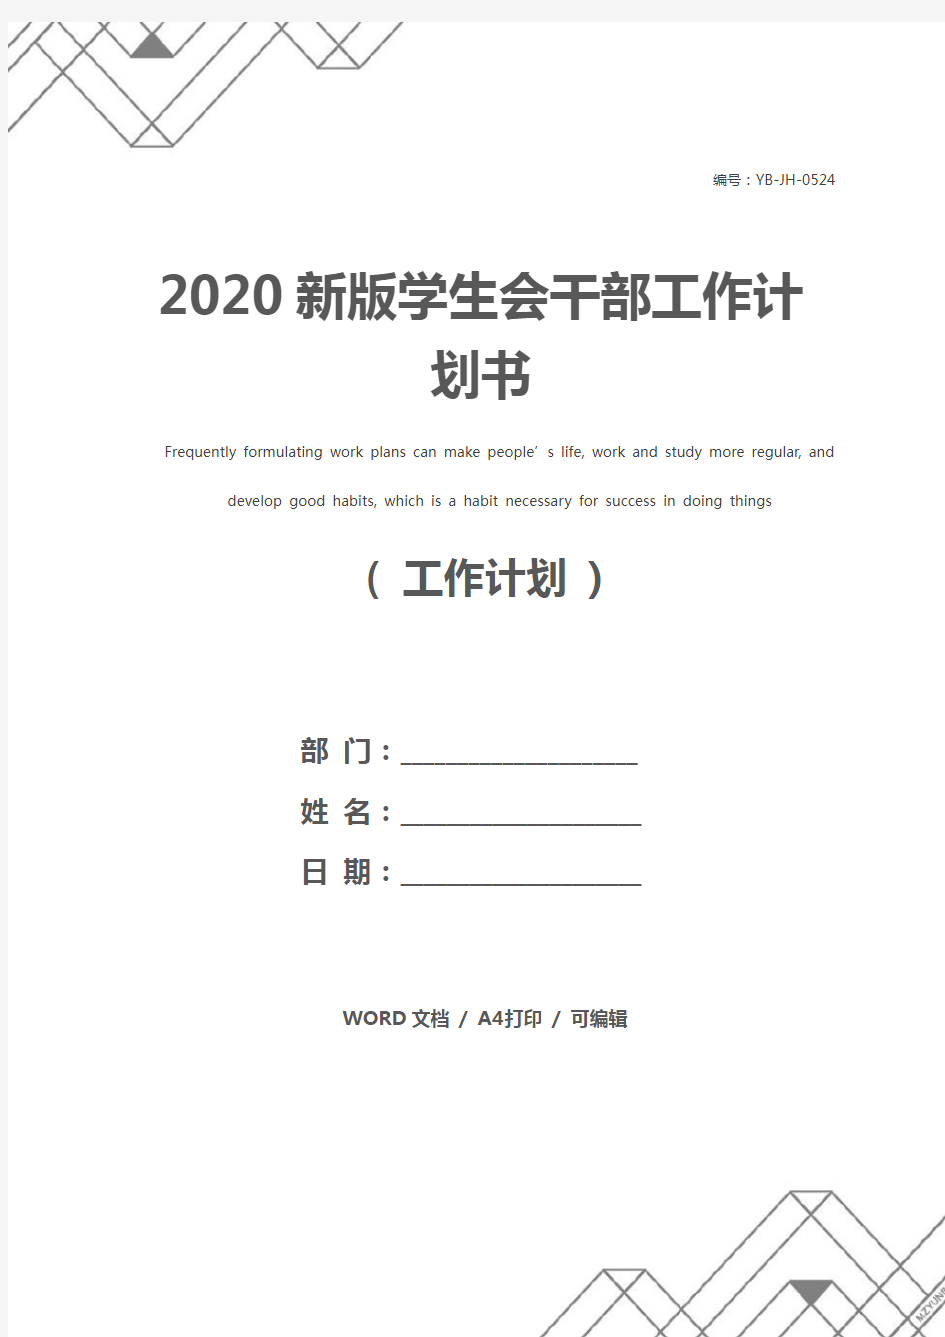 2020新版学生会干部工作计划书